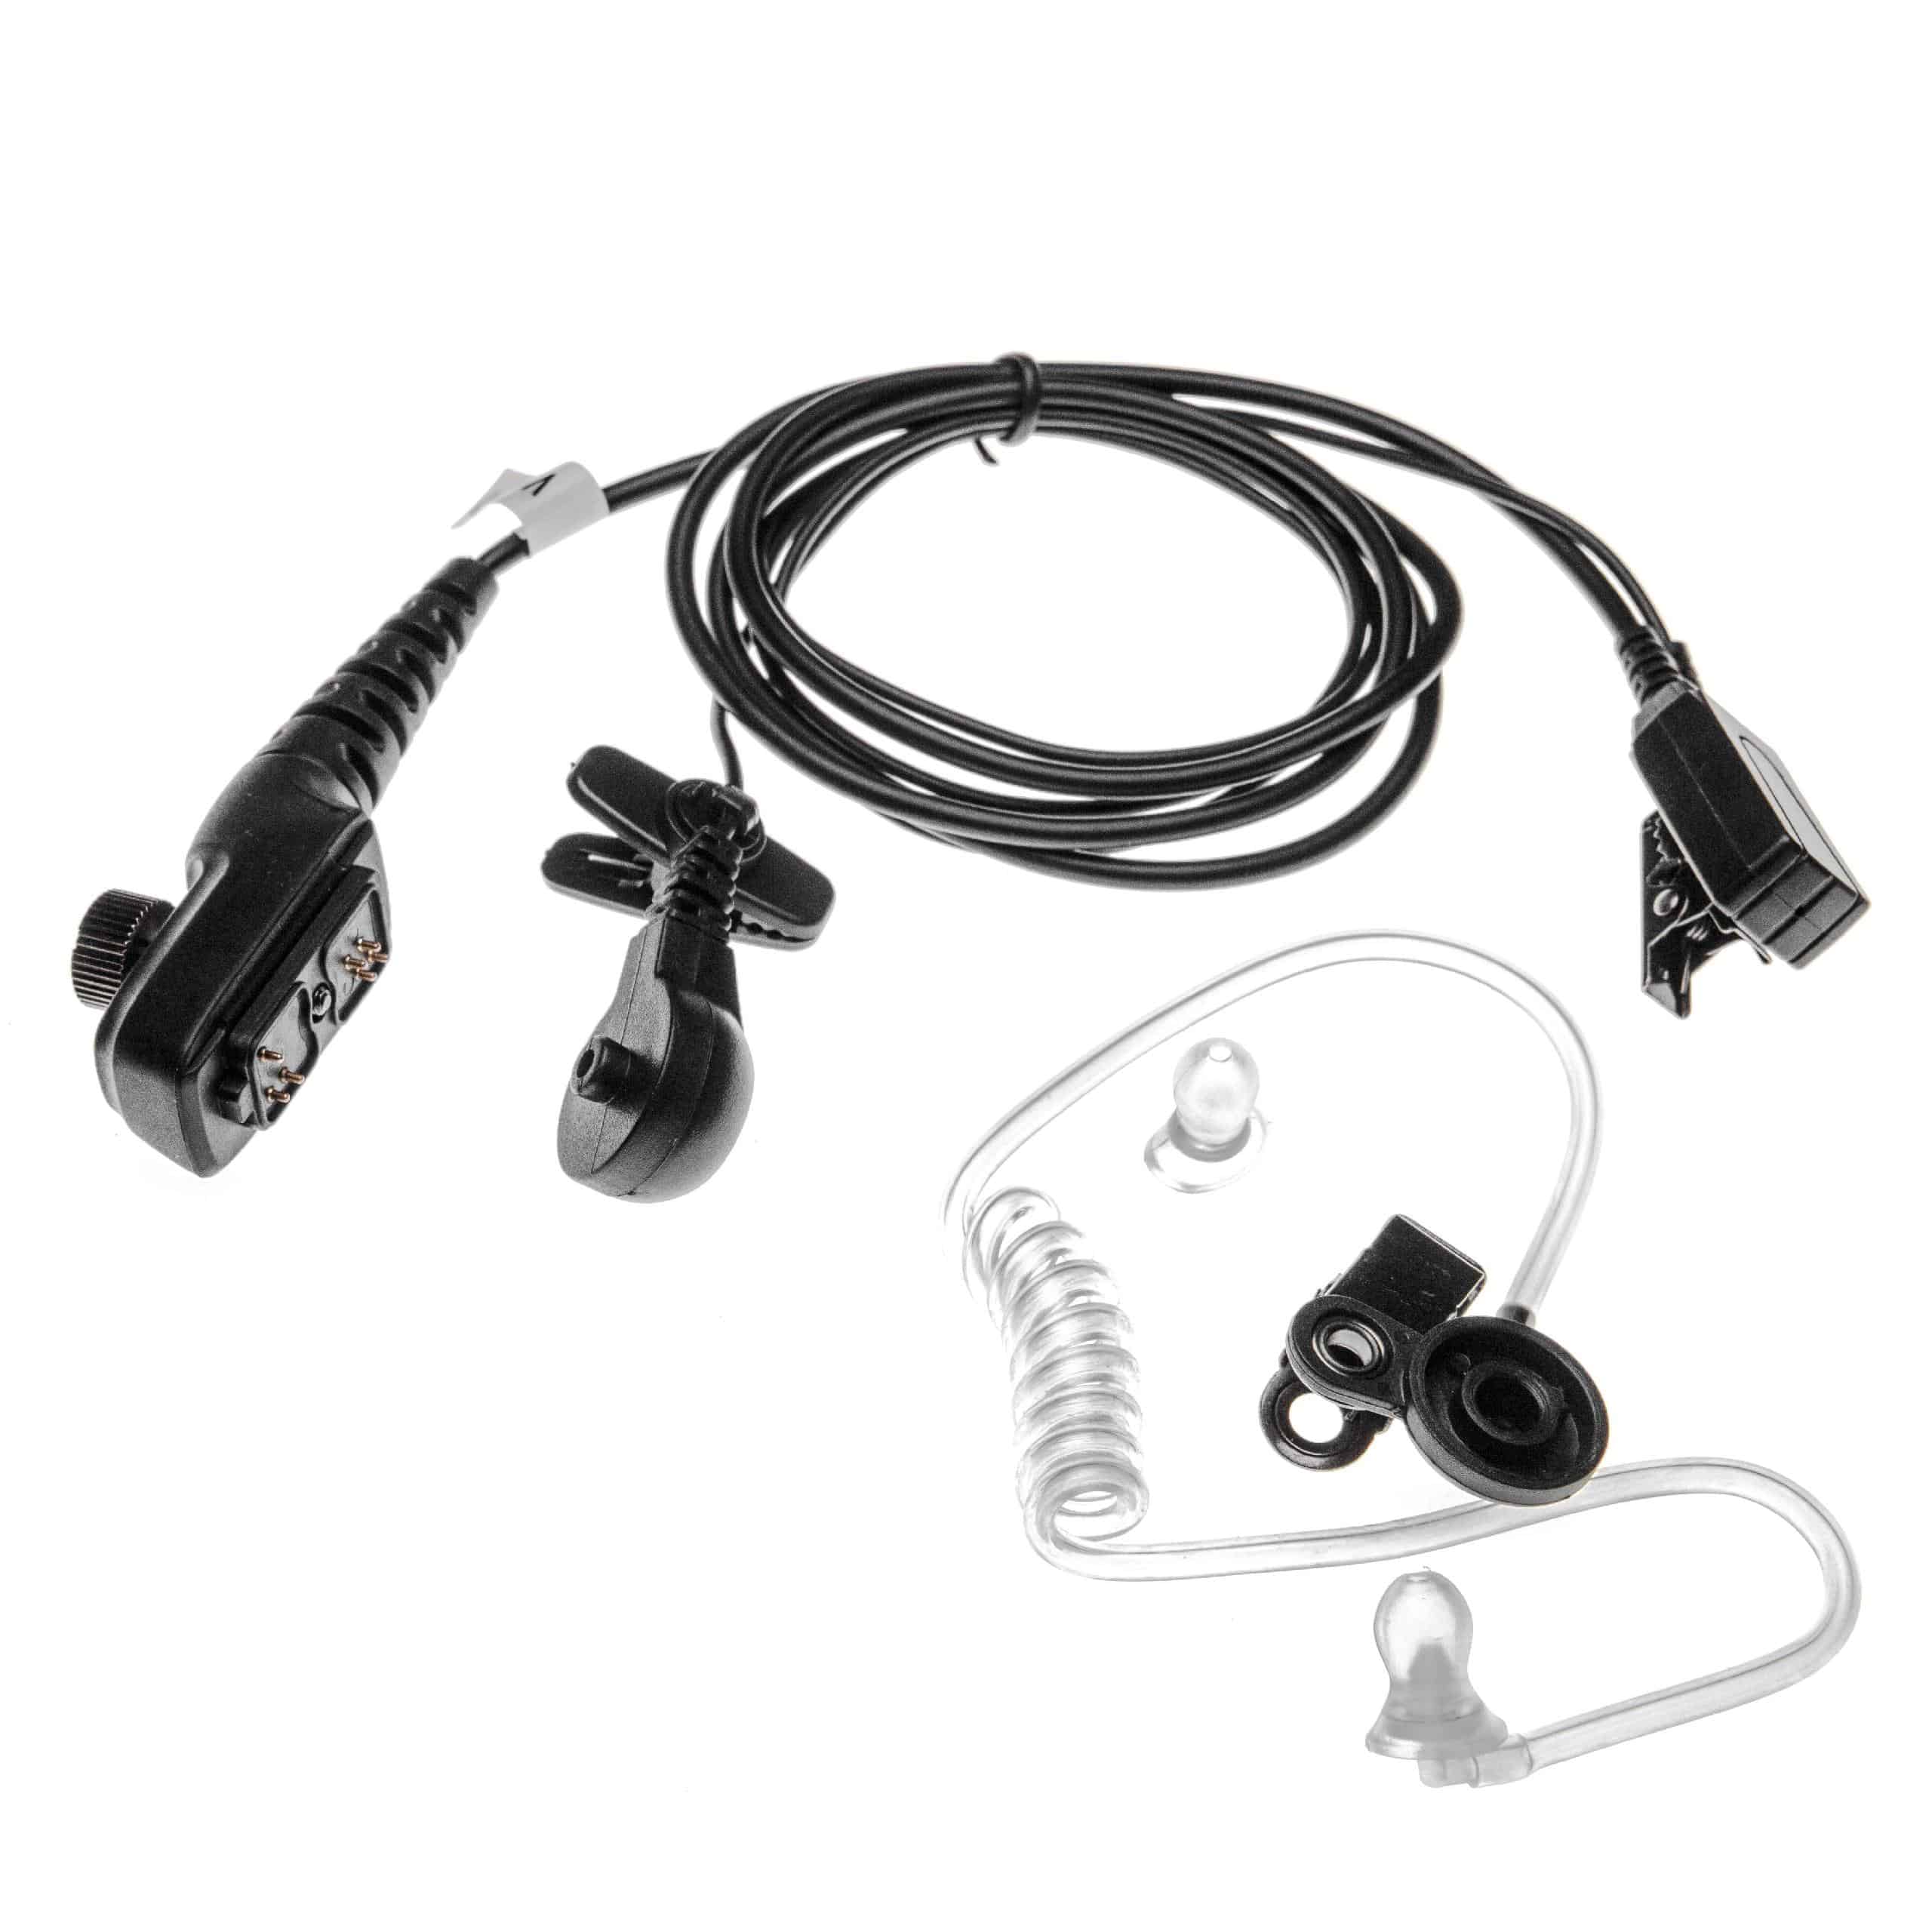 Auriculares para transceptor HYT/Hytera PD700 + micrófono push-to-talk + soporte clip + tubo acústico transpar